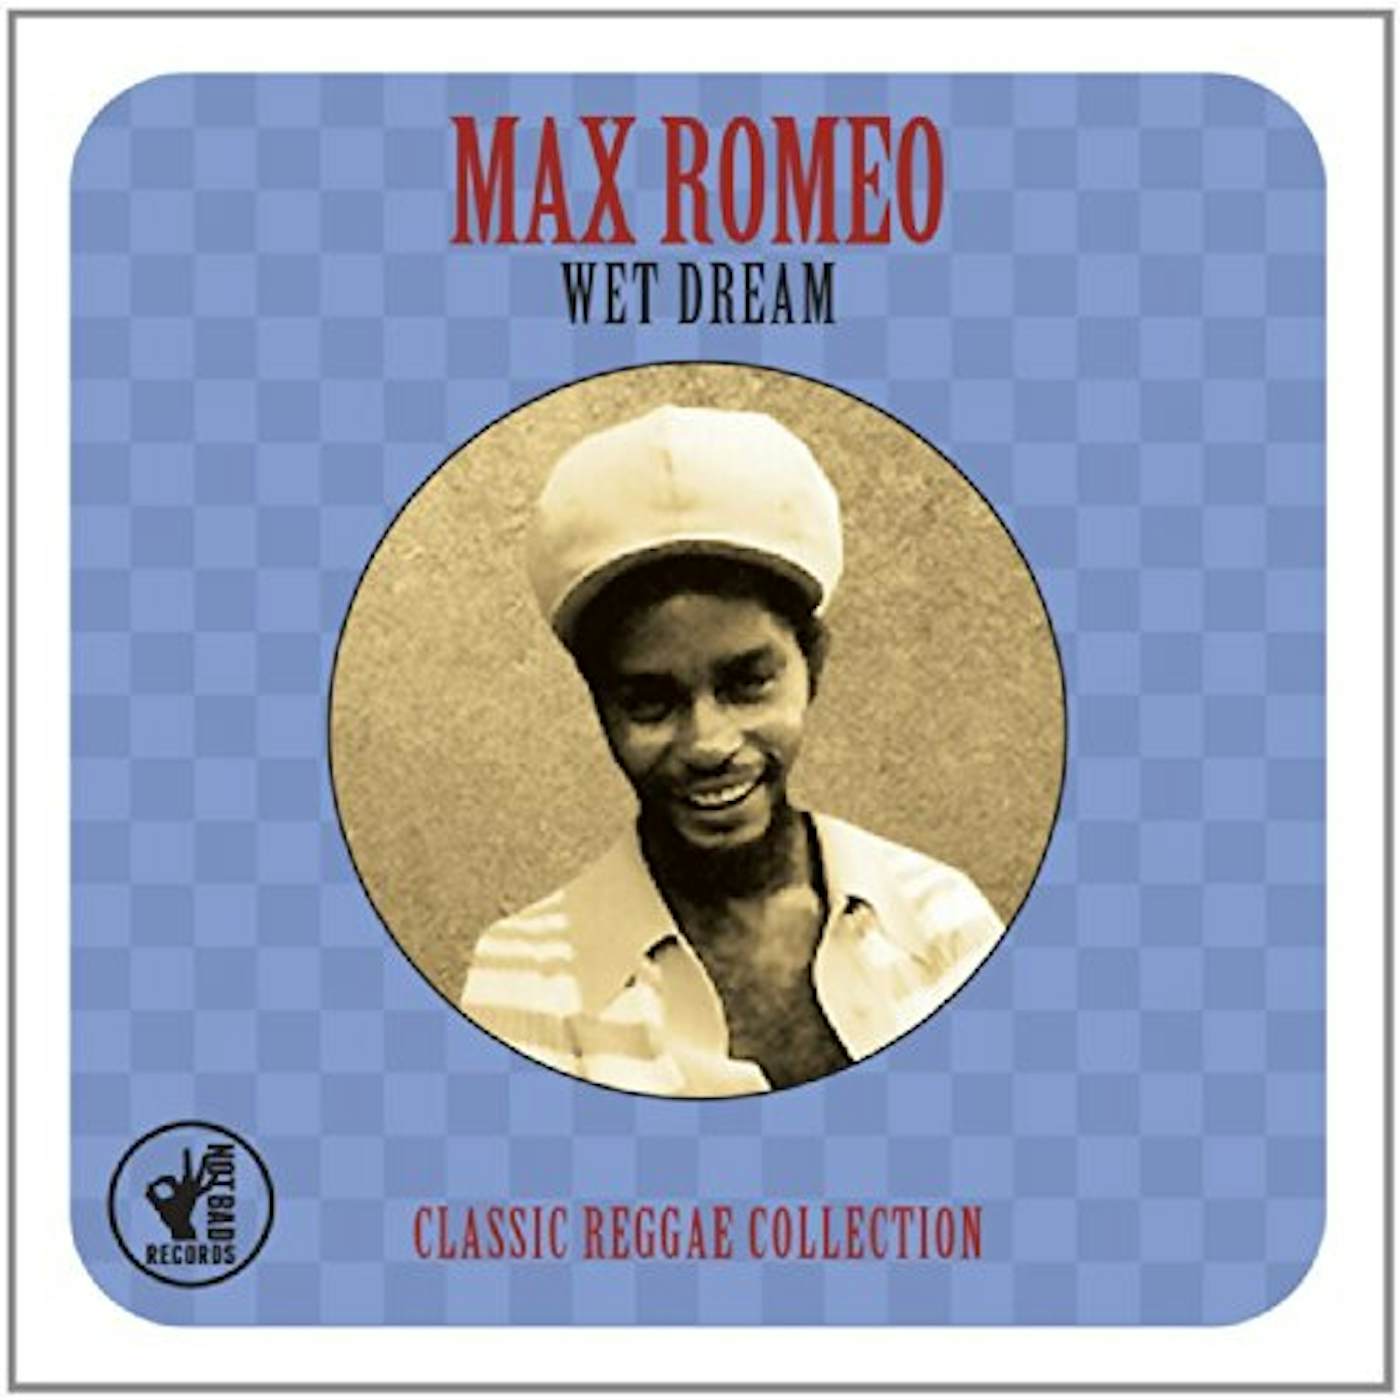 Max Romeo WET DREAM CLASSIC REGGAE COLLECTION CD